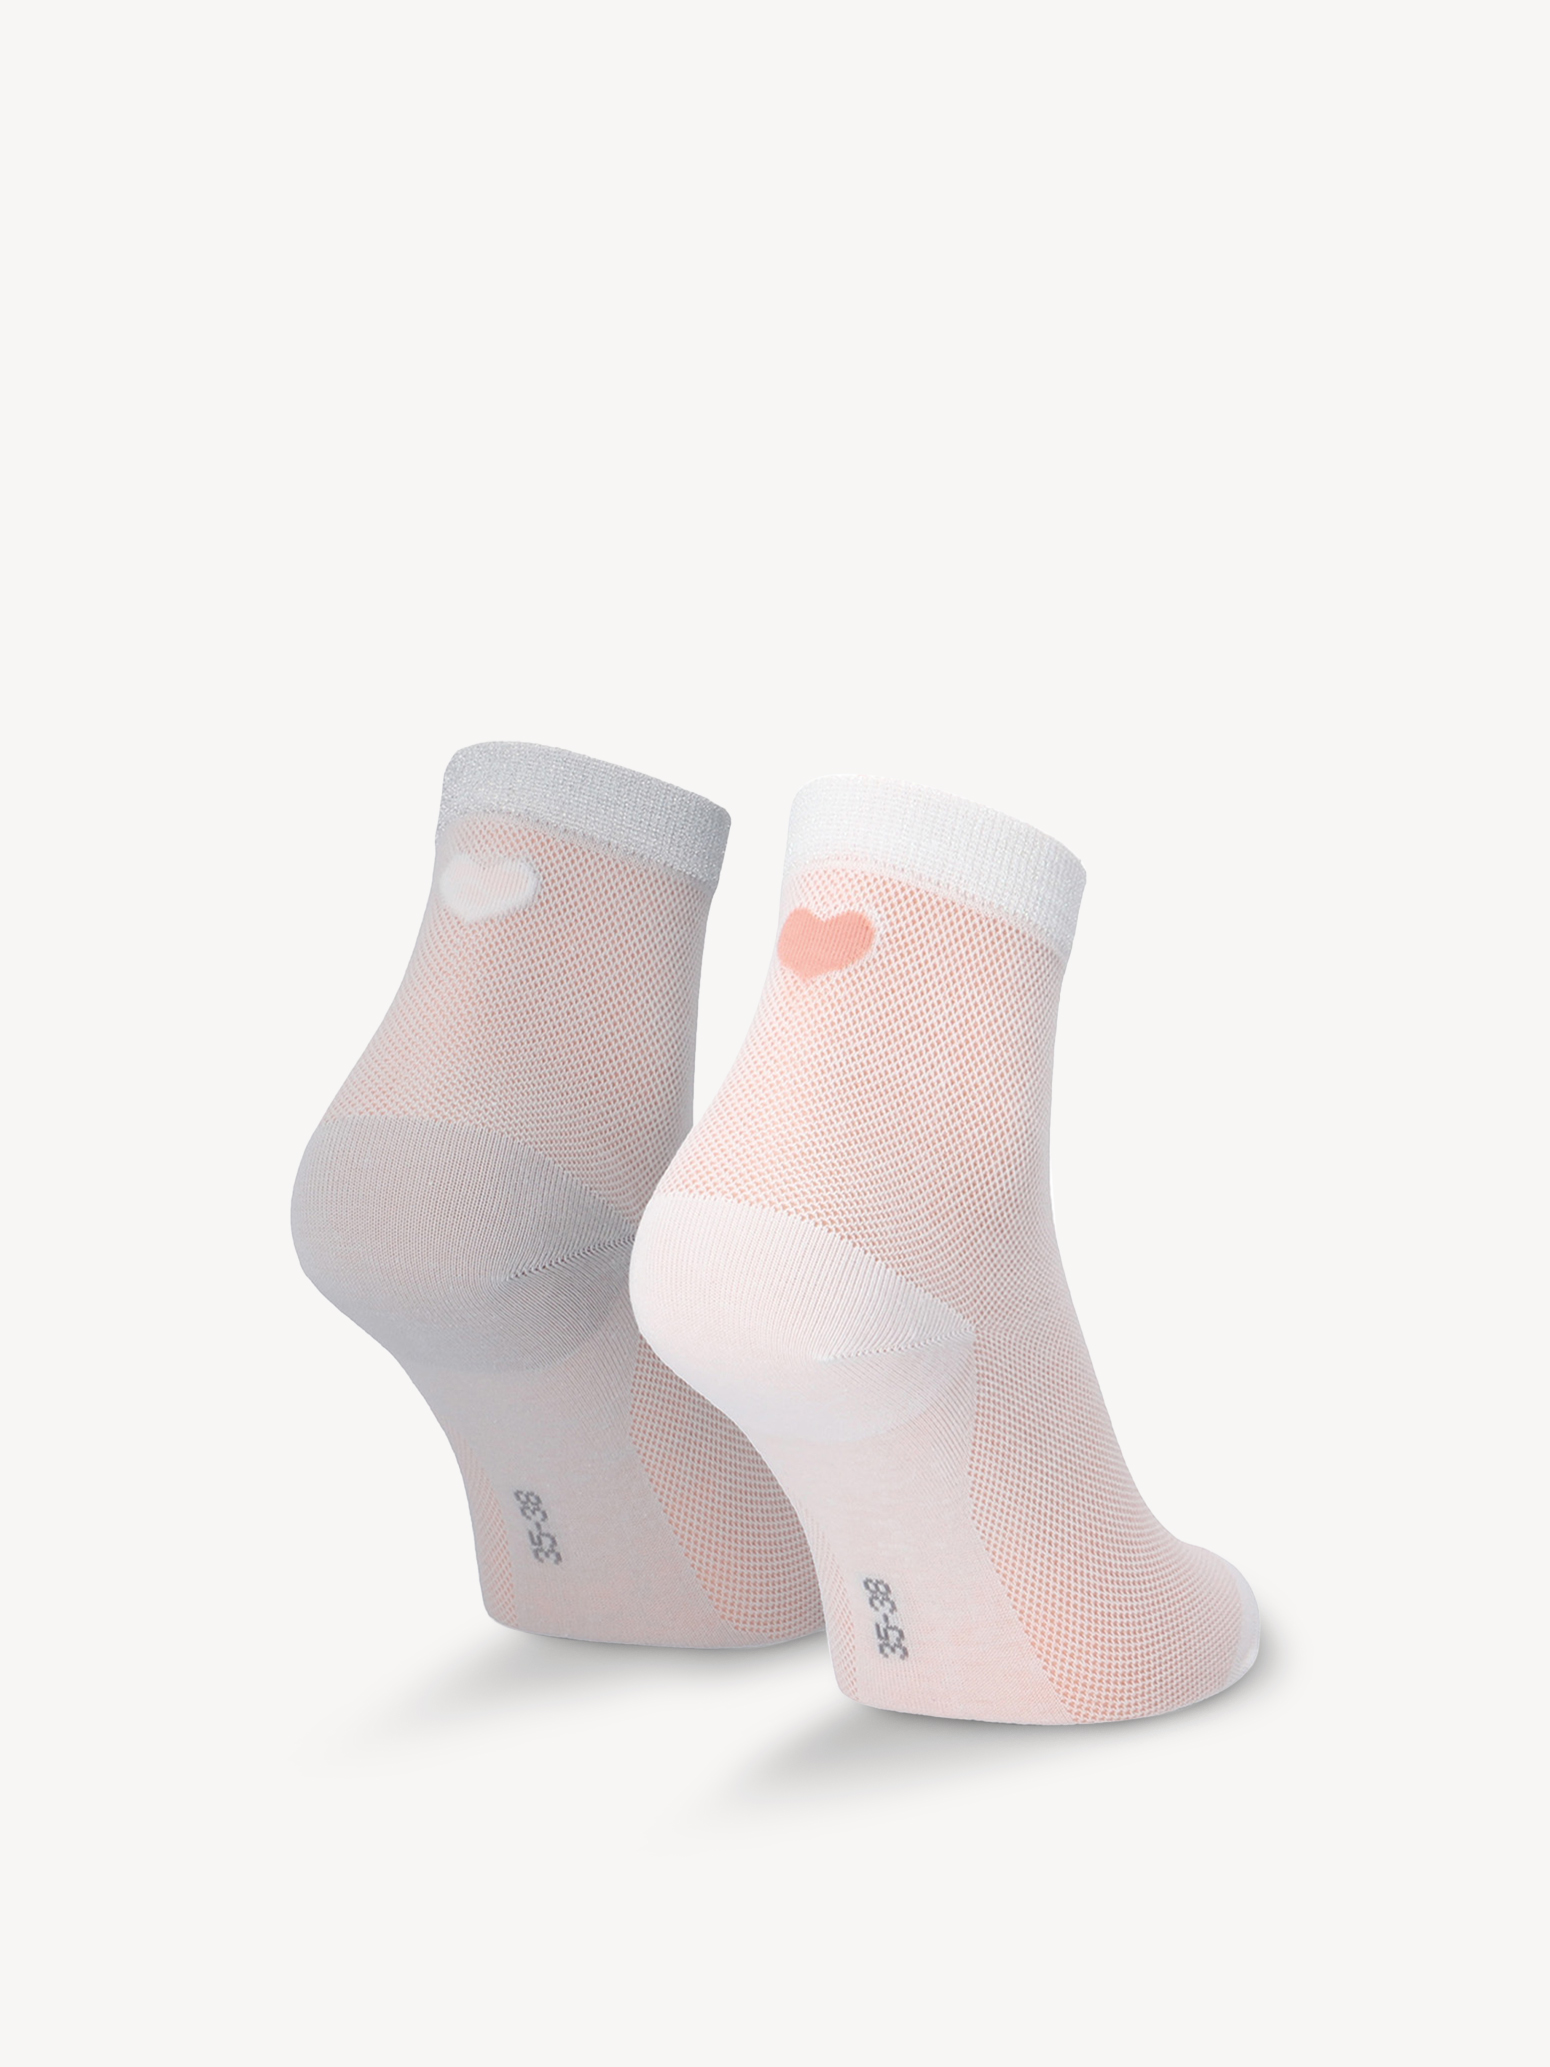 Socks set - multicolor